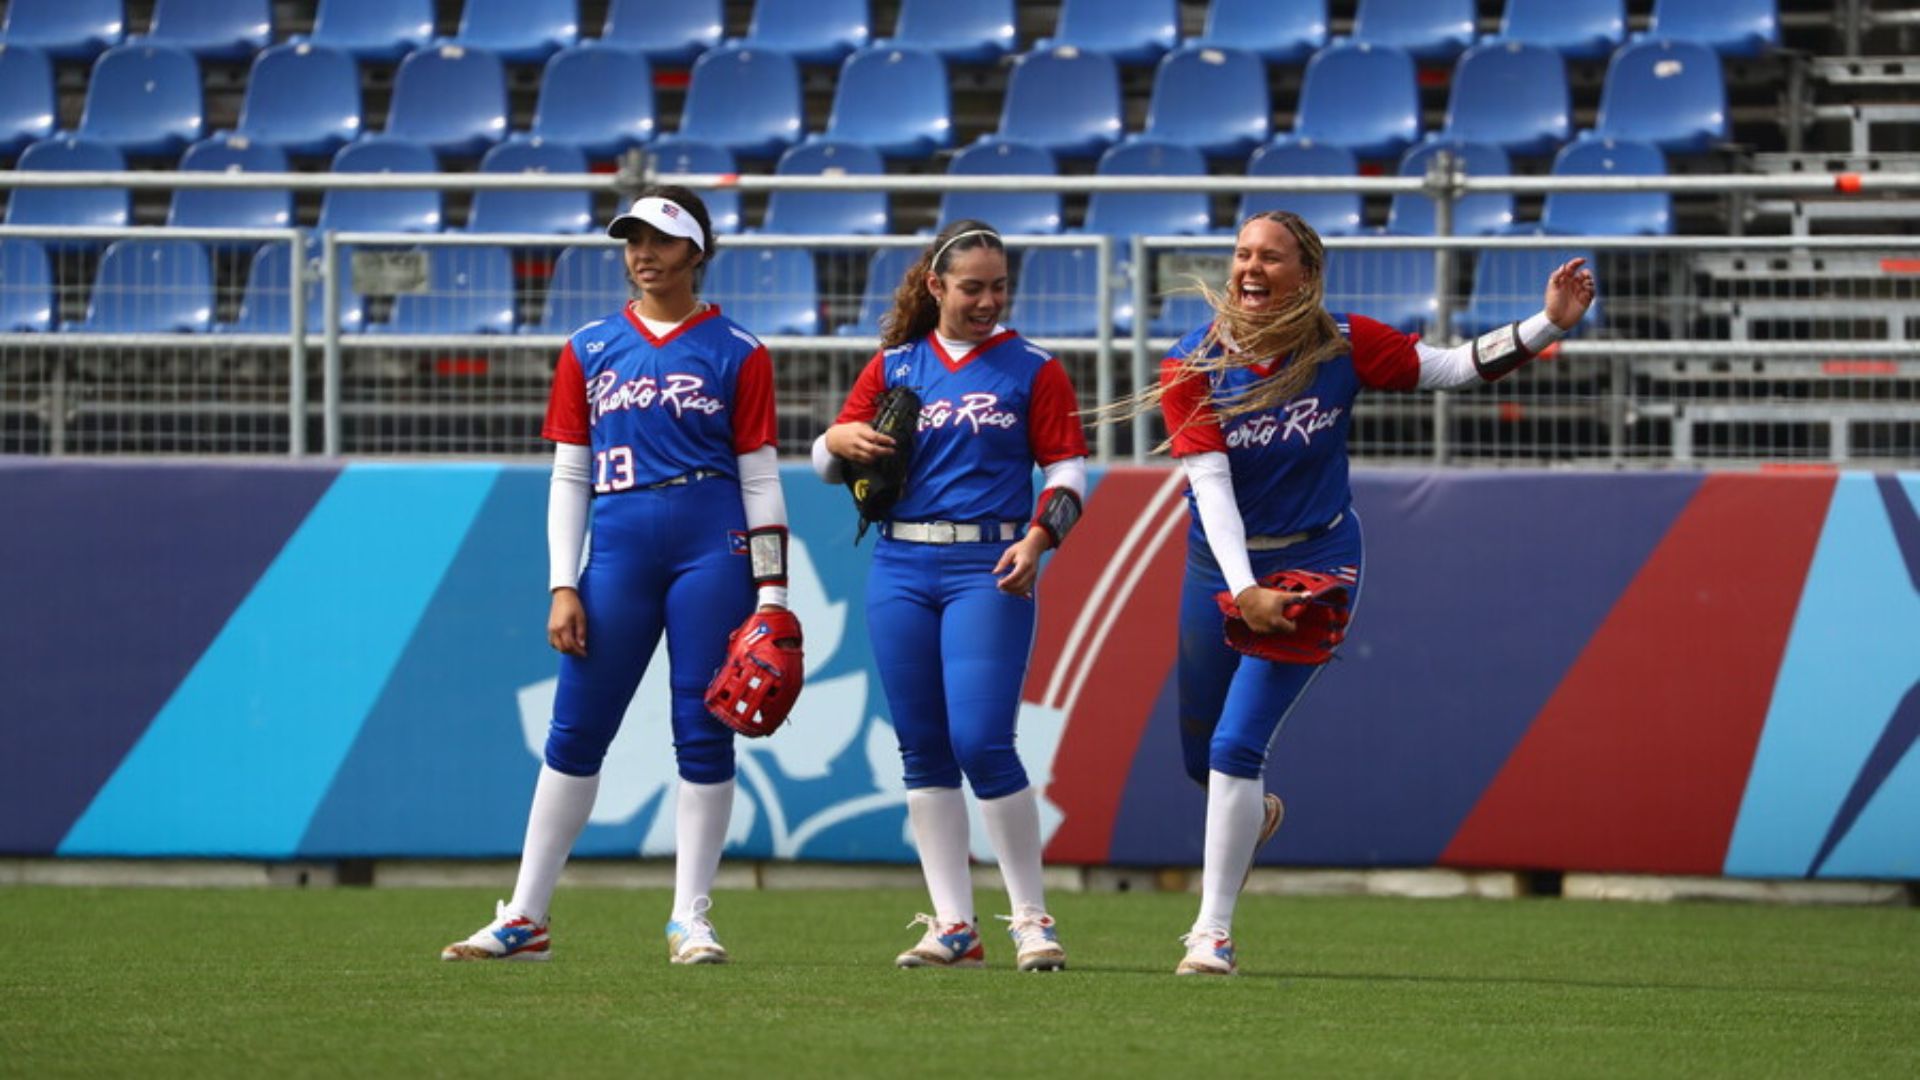 Puerto Rico impuso sus pergaminos sobre Perú en el sóftbol femenino